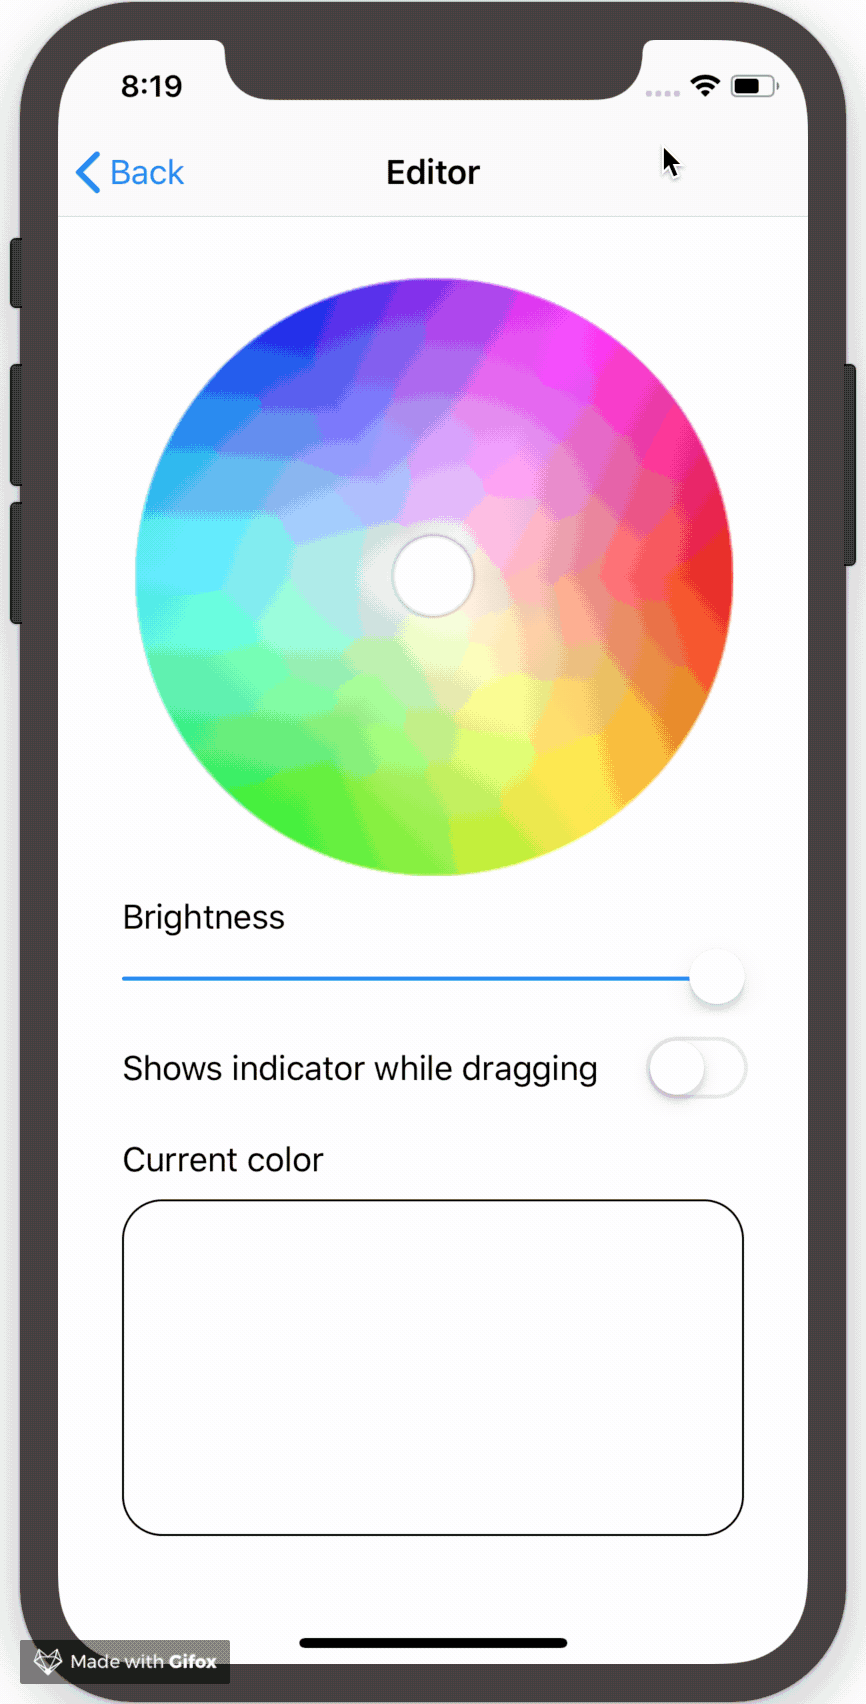 color-picker